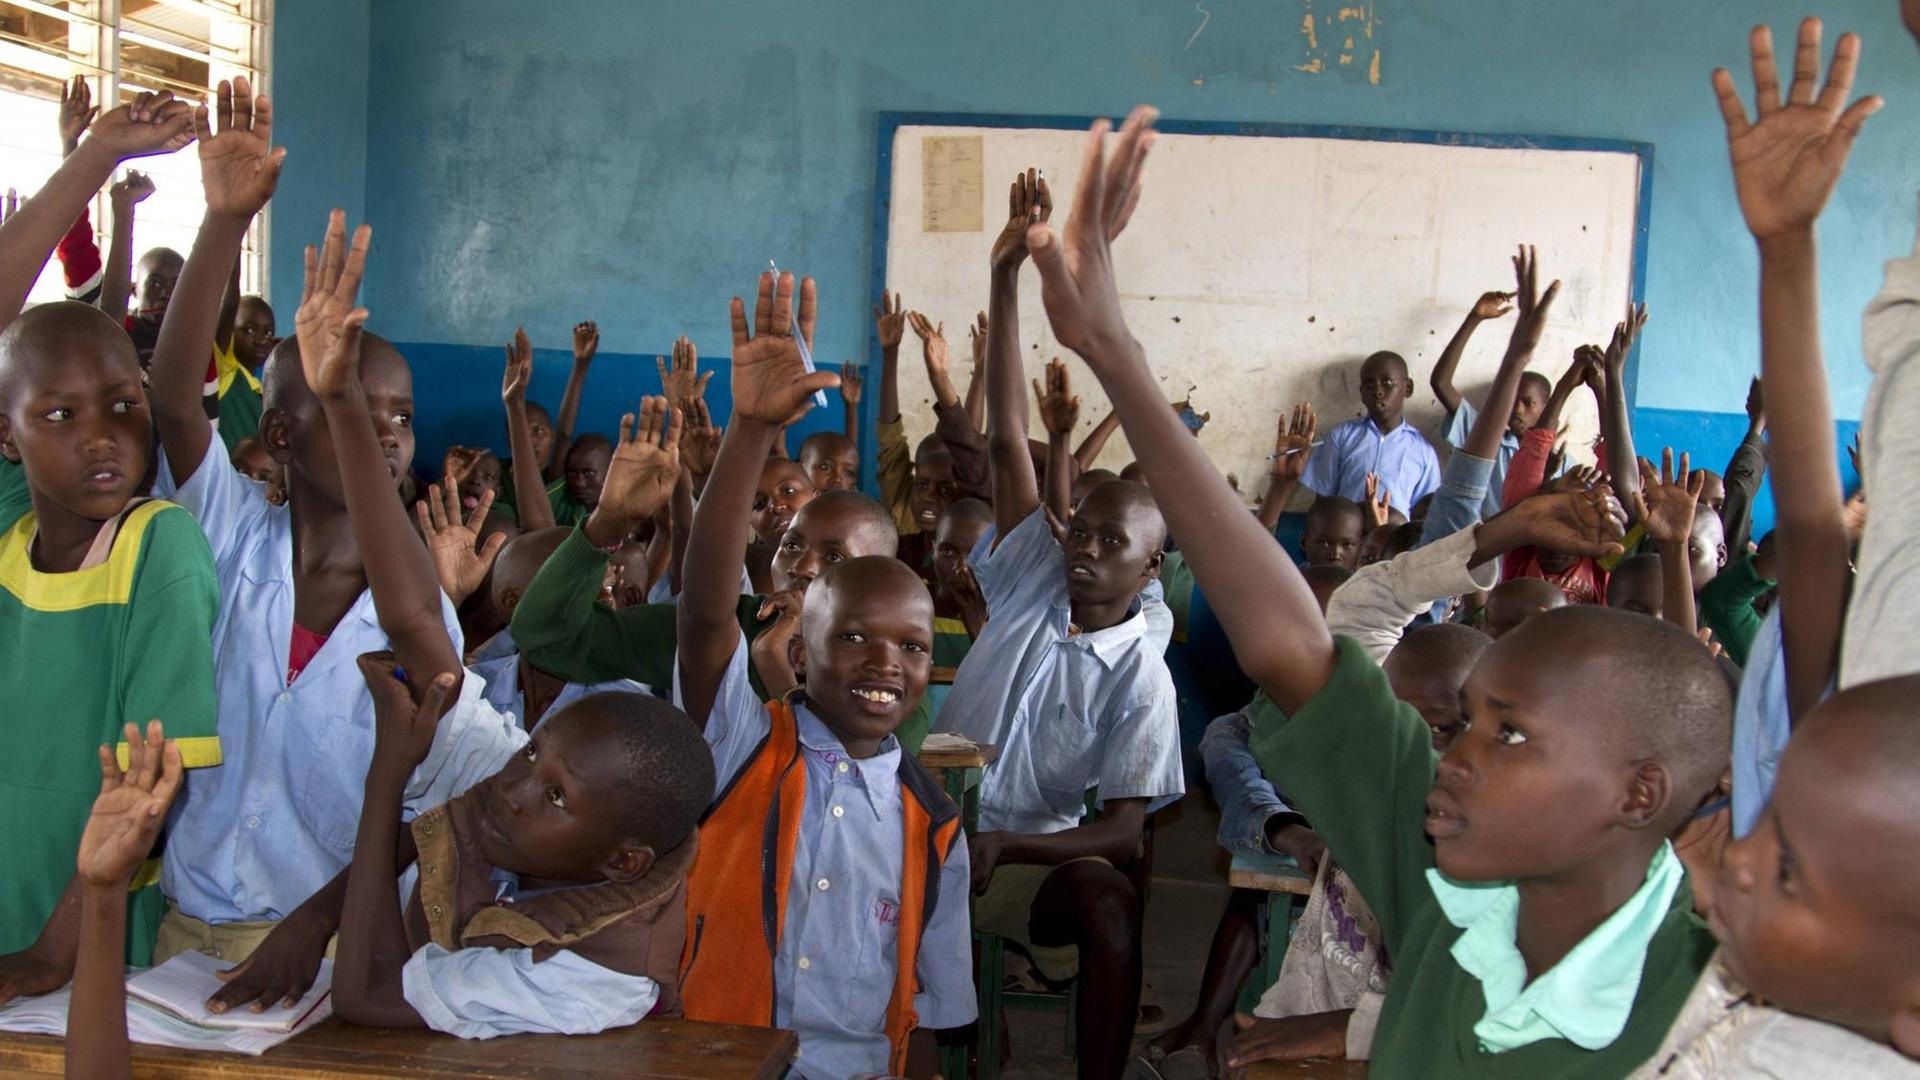 Schulklasse in Kenia - viele Kinder auf engem Raum heben die Hand